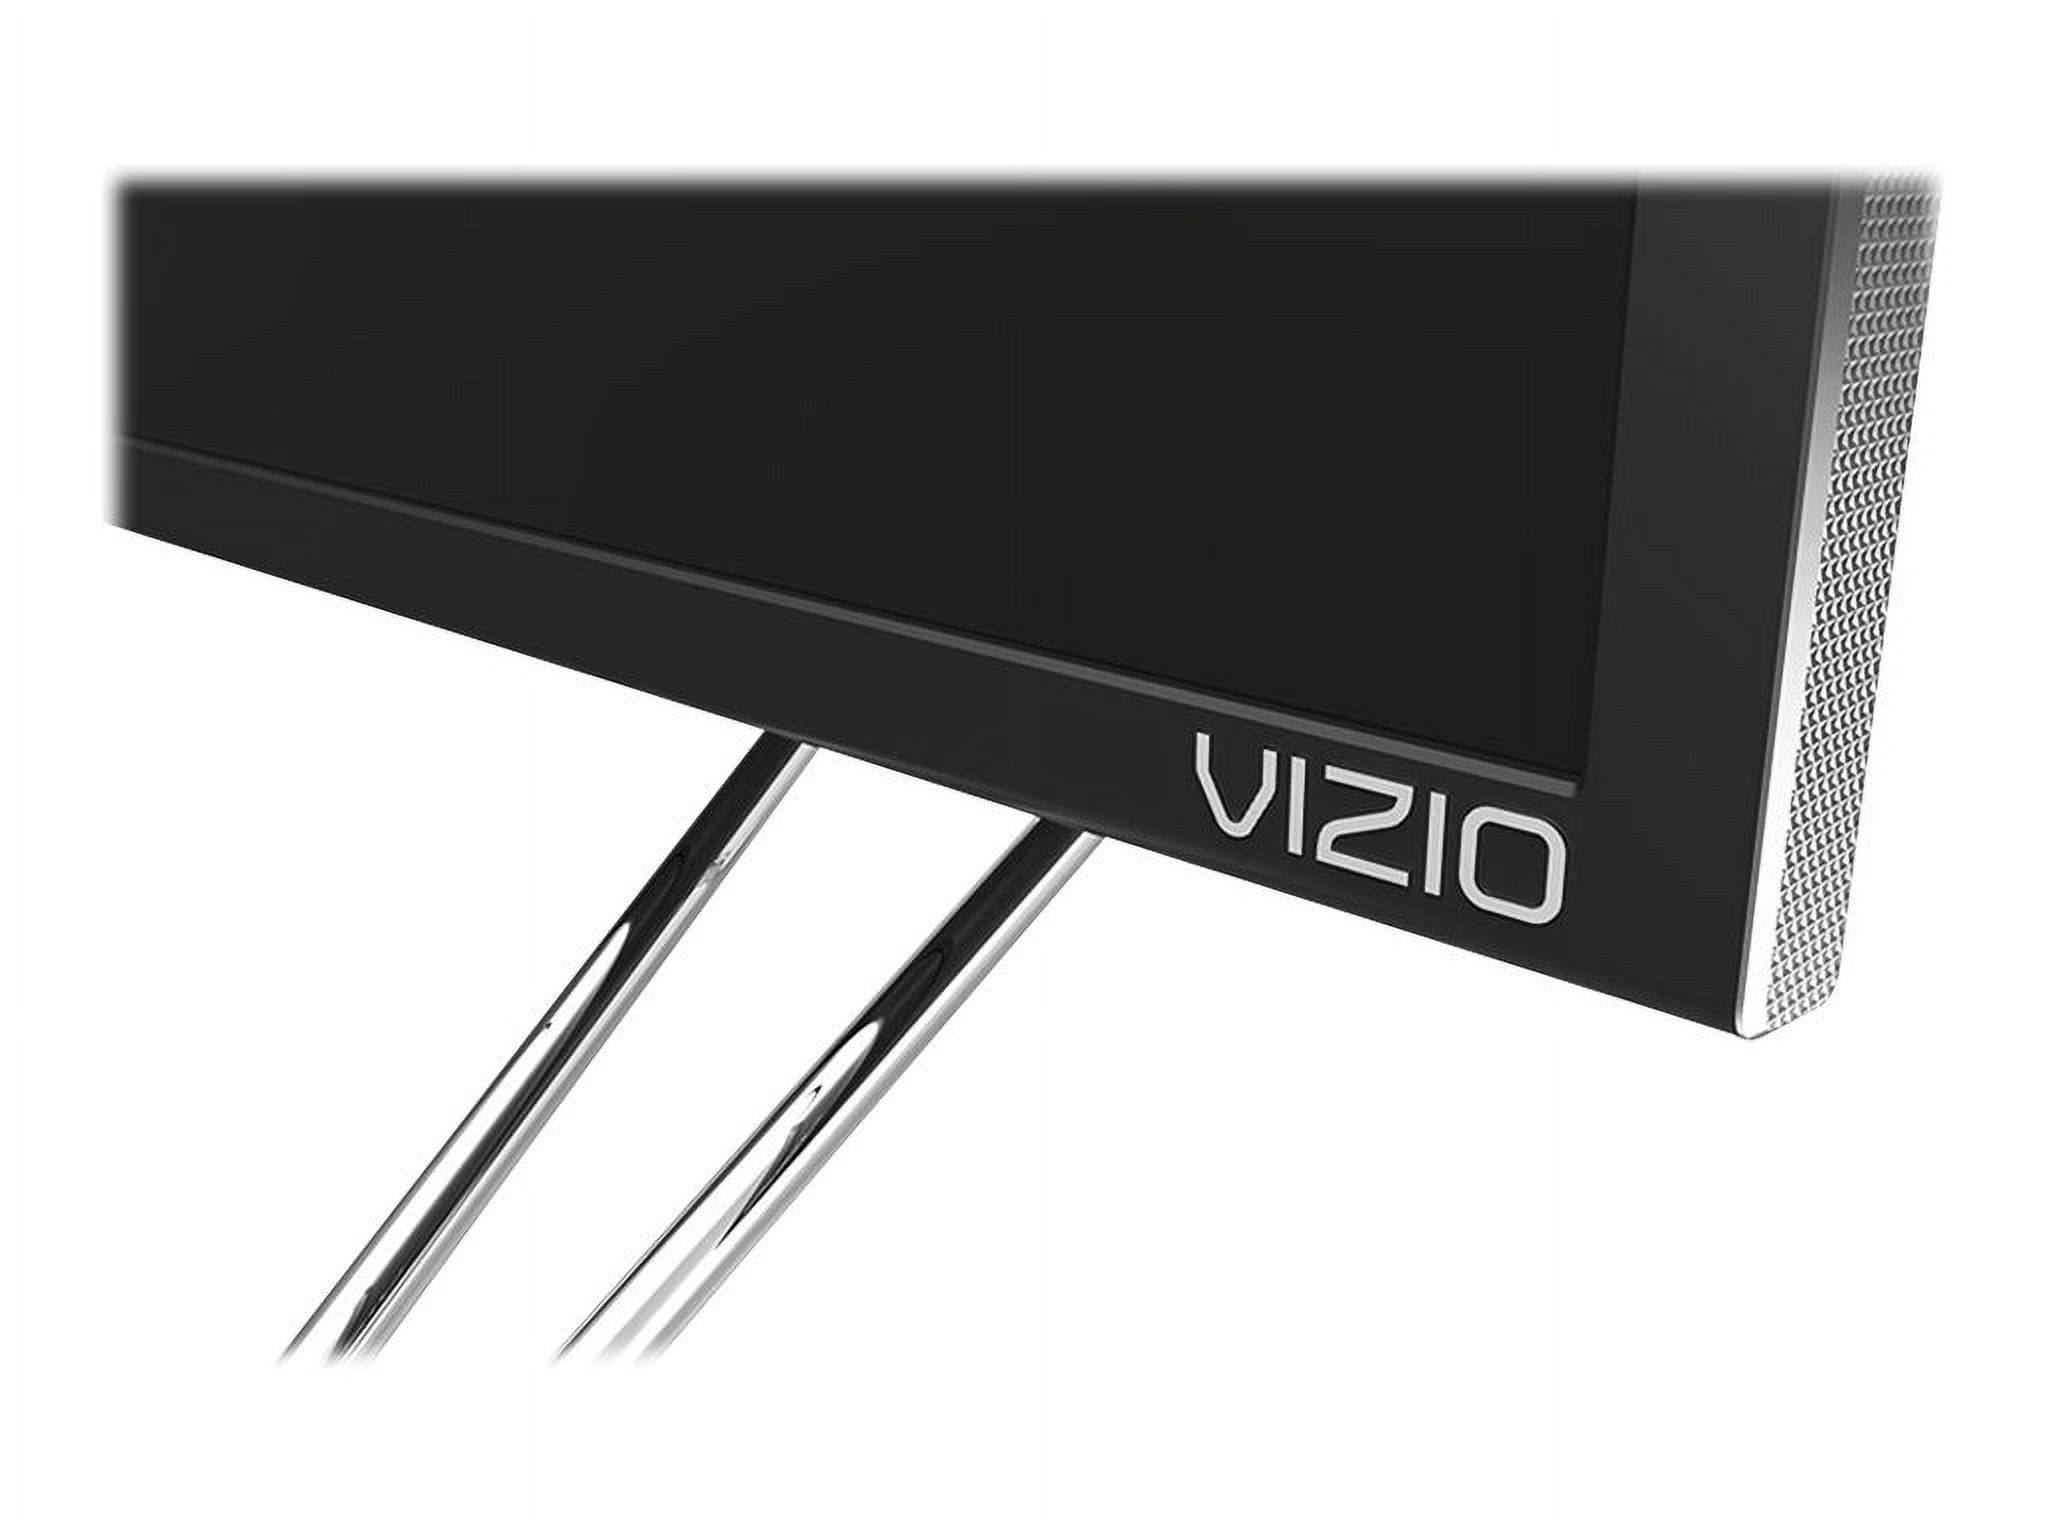 VIZIO 60" Class 4K UHDTV (2160p) Smart LED-LCD TV (M60-D1) - image 5 of 14